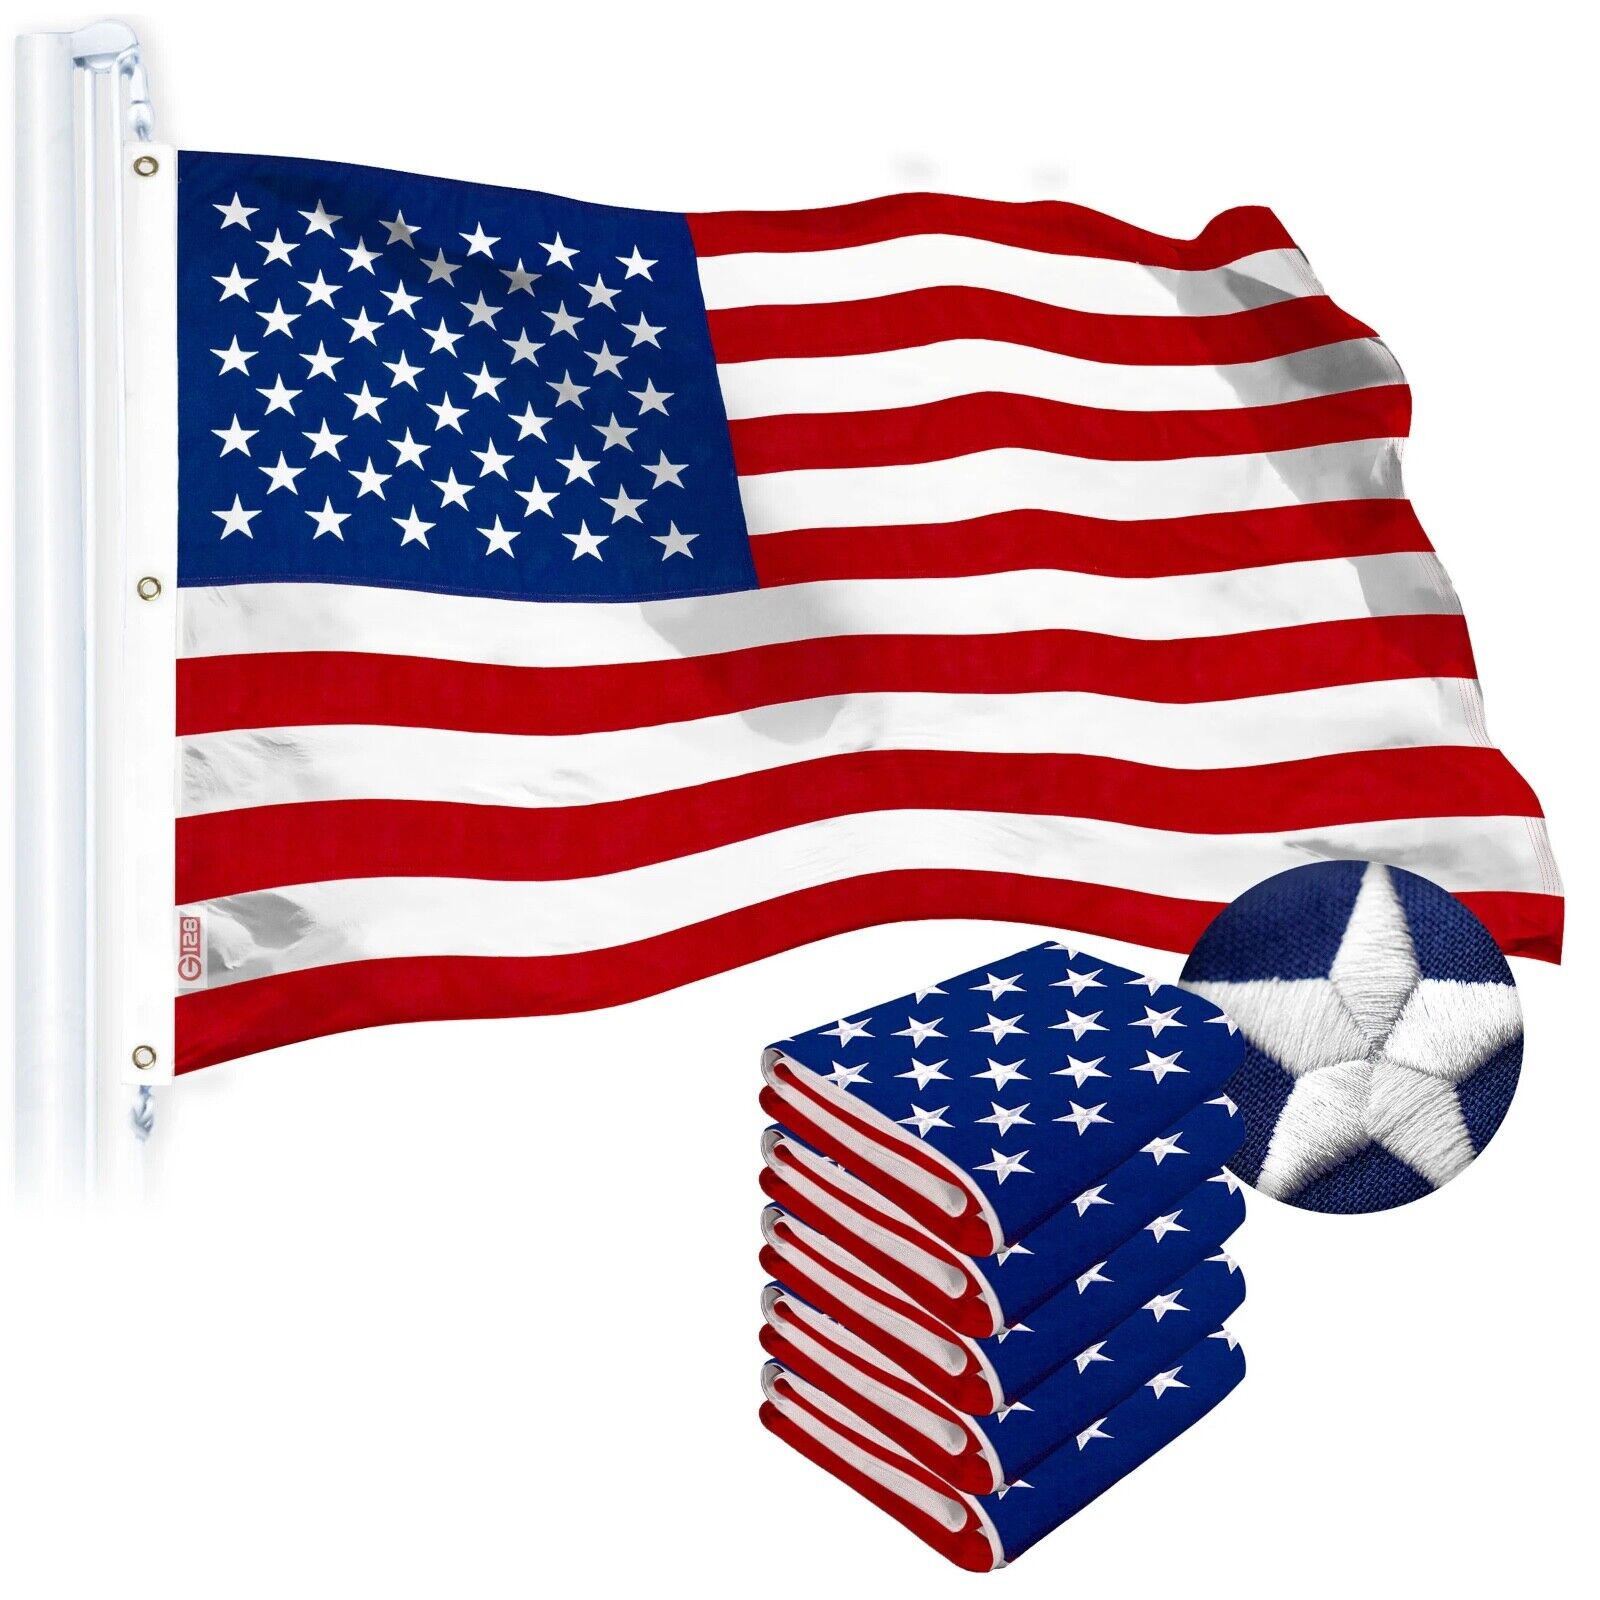 G128 – American Flag US USA | 6x10 ft | Tough SPUN POLYESTER Embroidered Stars